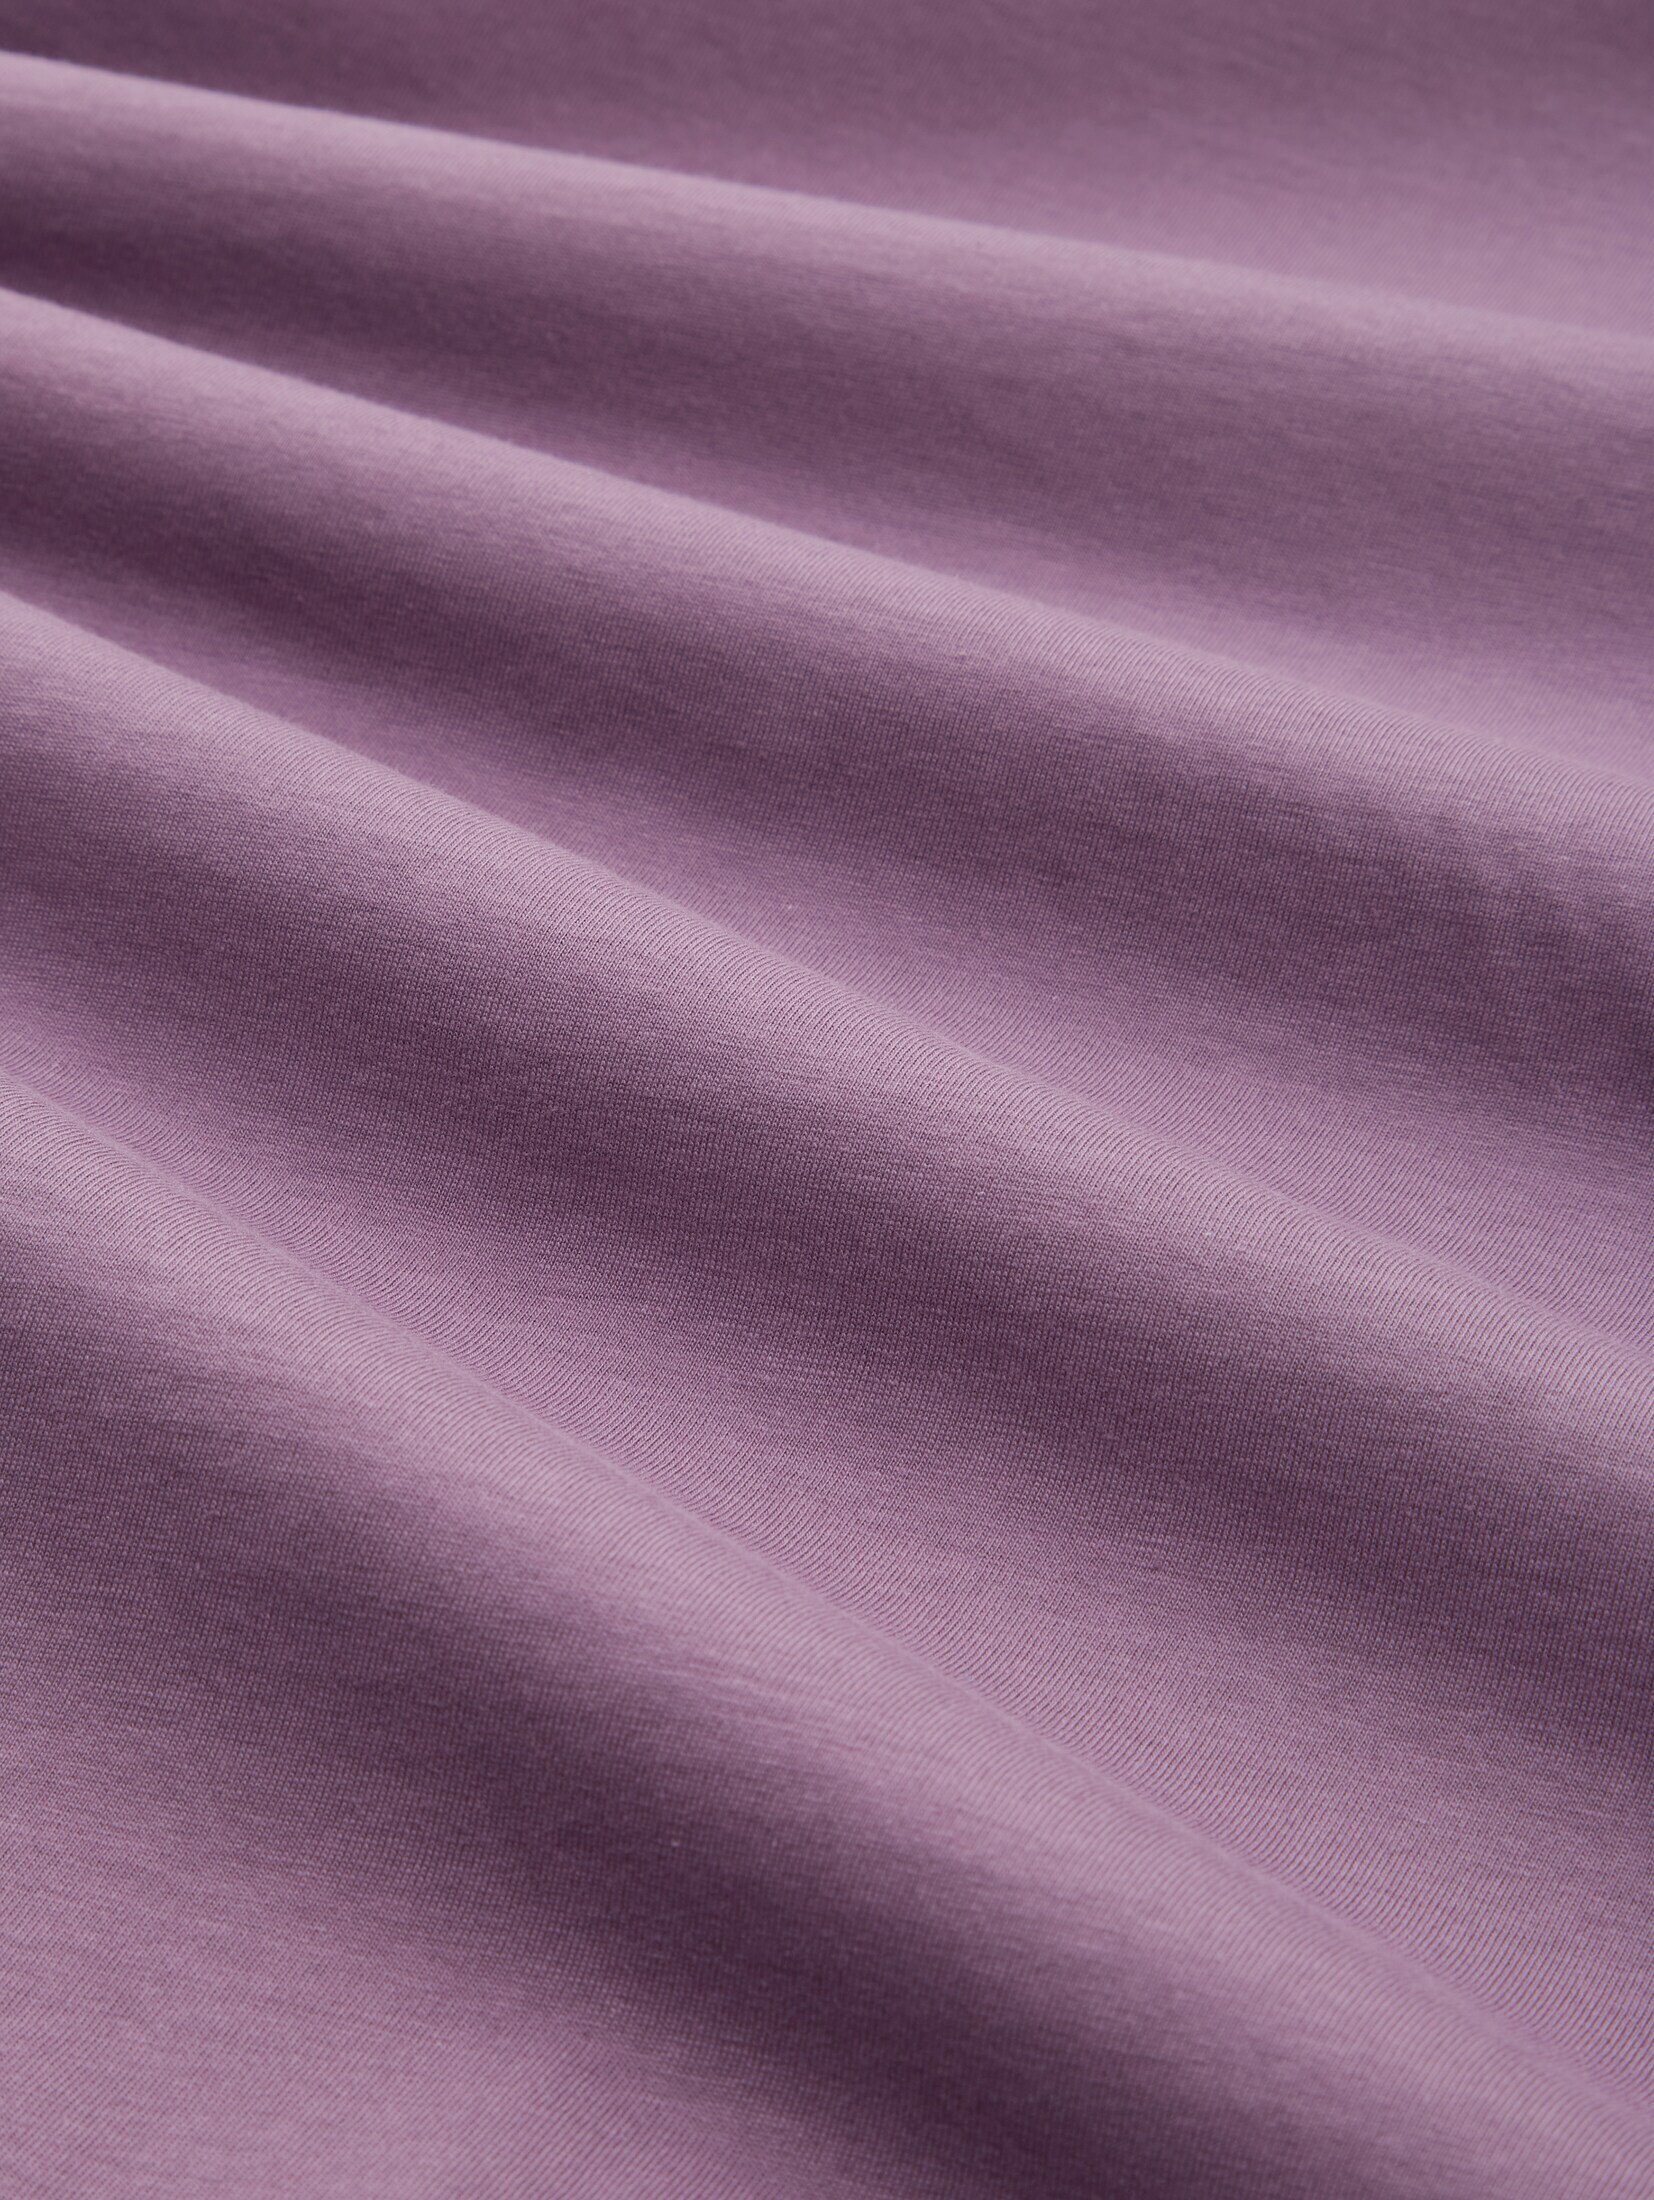 TOM TAILOR Denim T-Shirt dusty Fotoprint T-Shirt mit grape